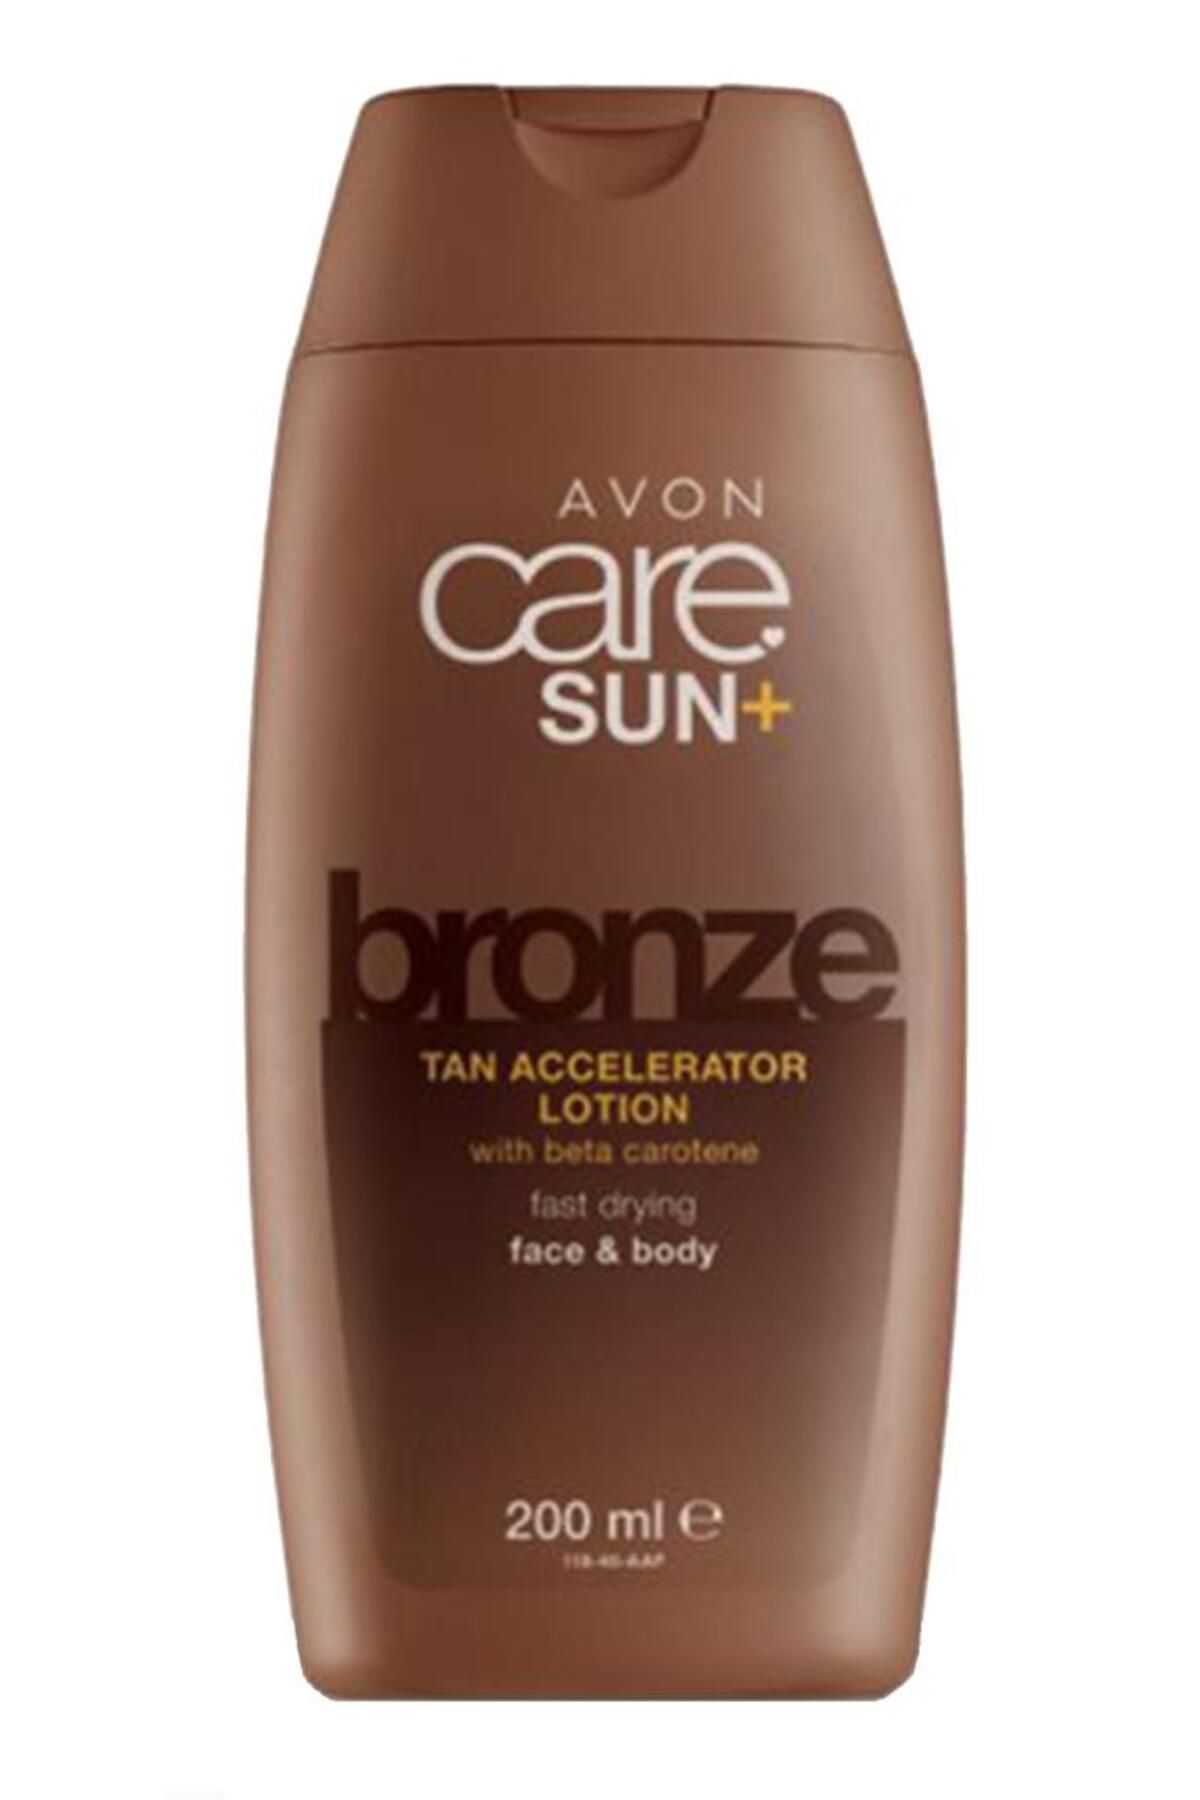 Avon Care Sun+ Bronze Bronzlaşmayı Hızlandırıcı Yüz Vücut Losyonu 200 Ml.